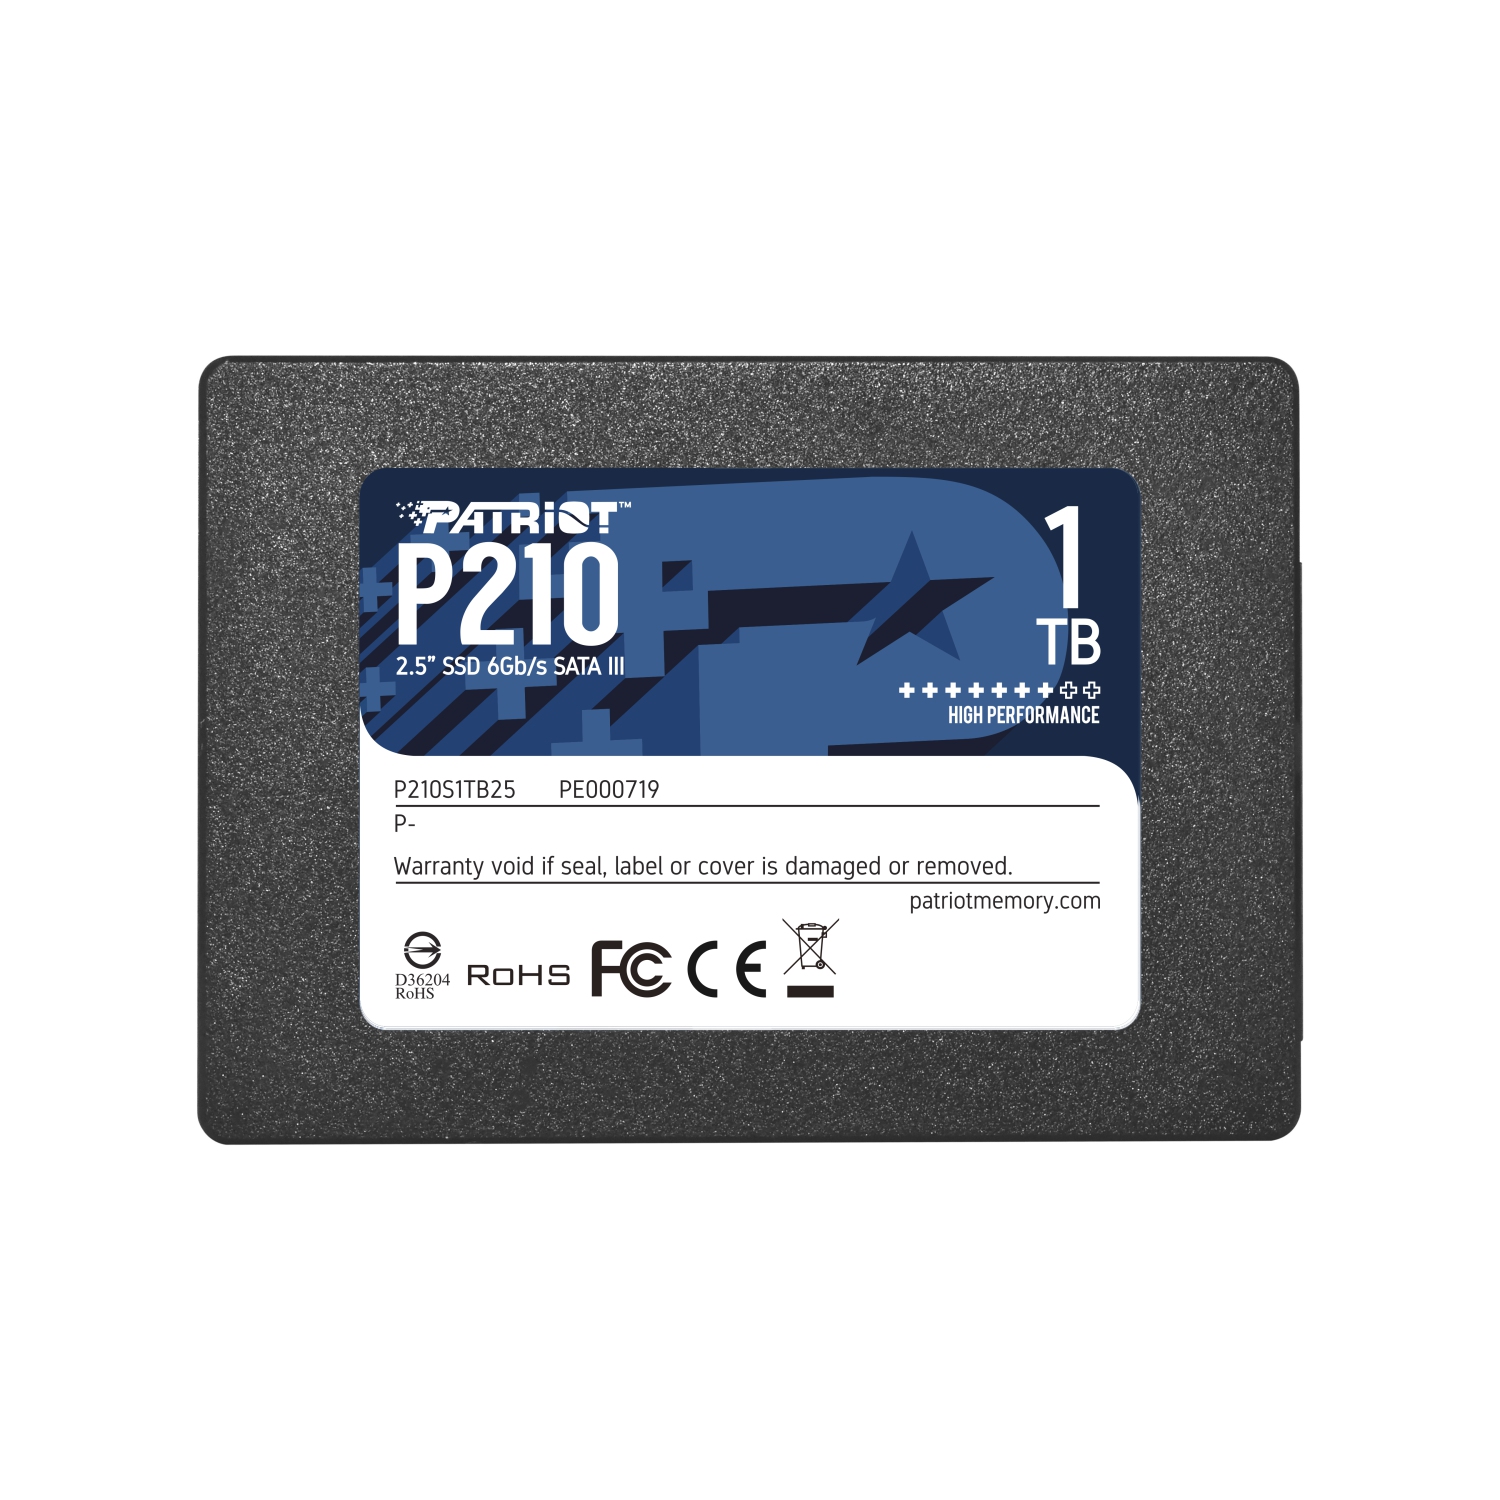 Patriot P210 1TB Internal SSD - SATA 3 2.5" - Solid State Drive - P210S1TB25